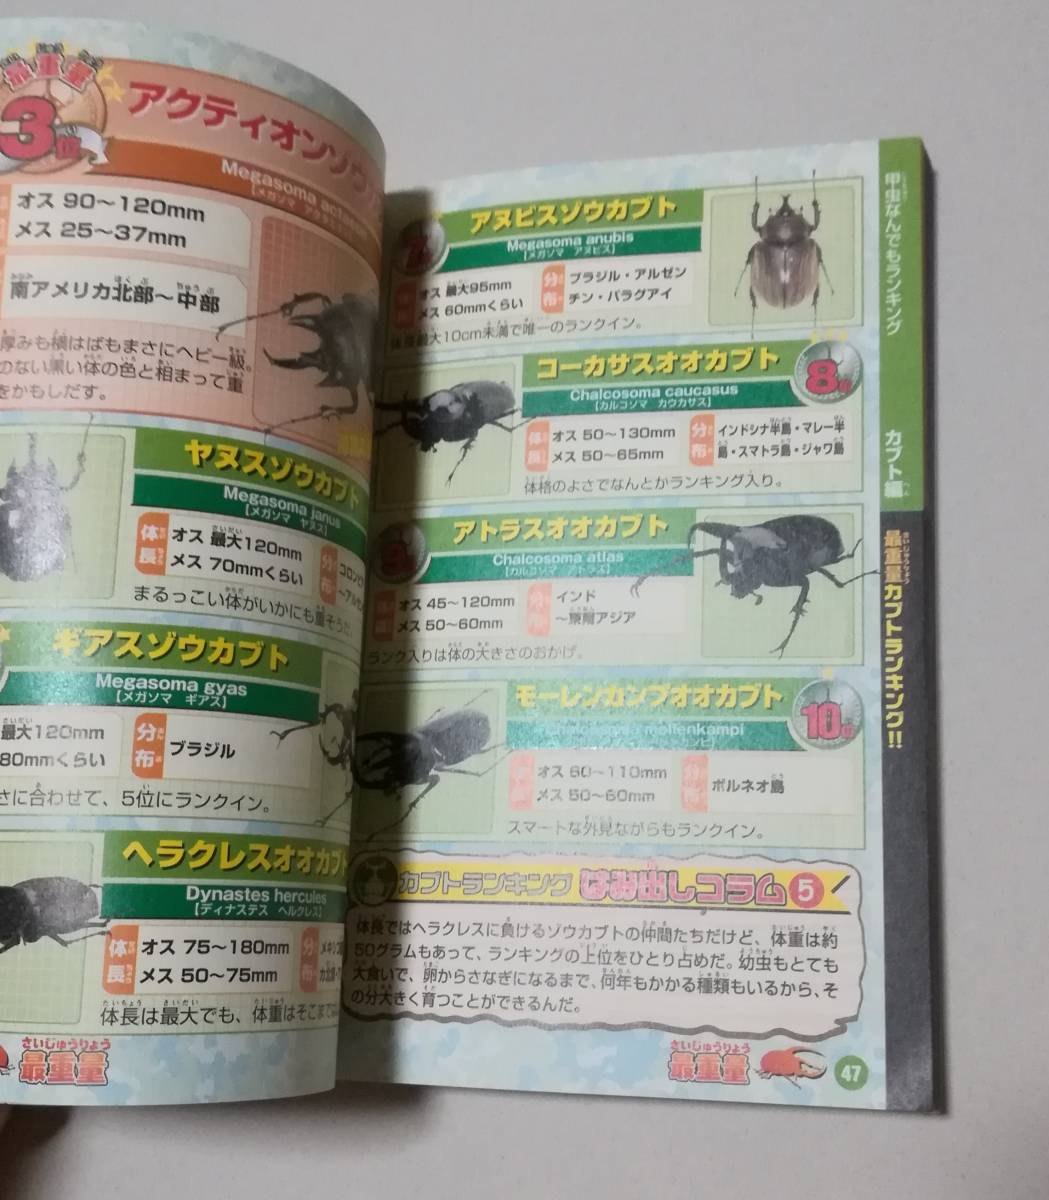  рогач & Kabuto . насекомое классификация большой различные предметы выпуск день 2005 год 9 месяц 